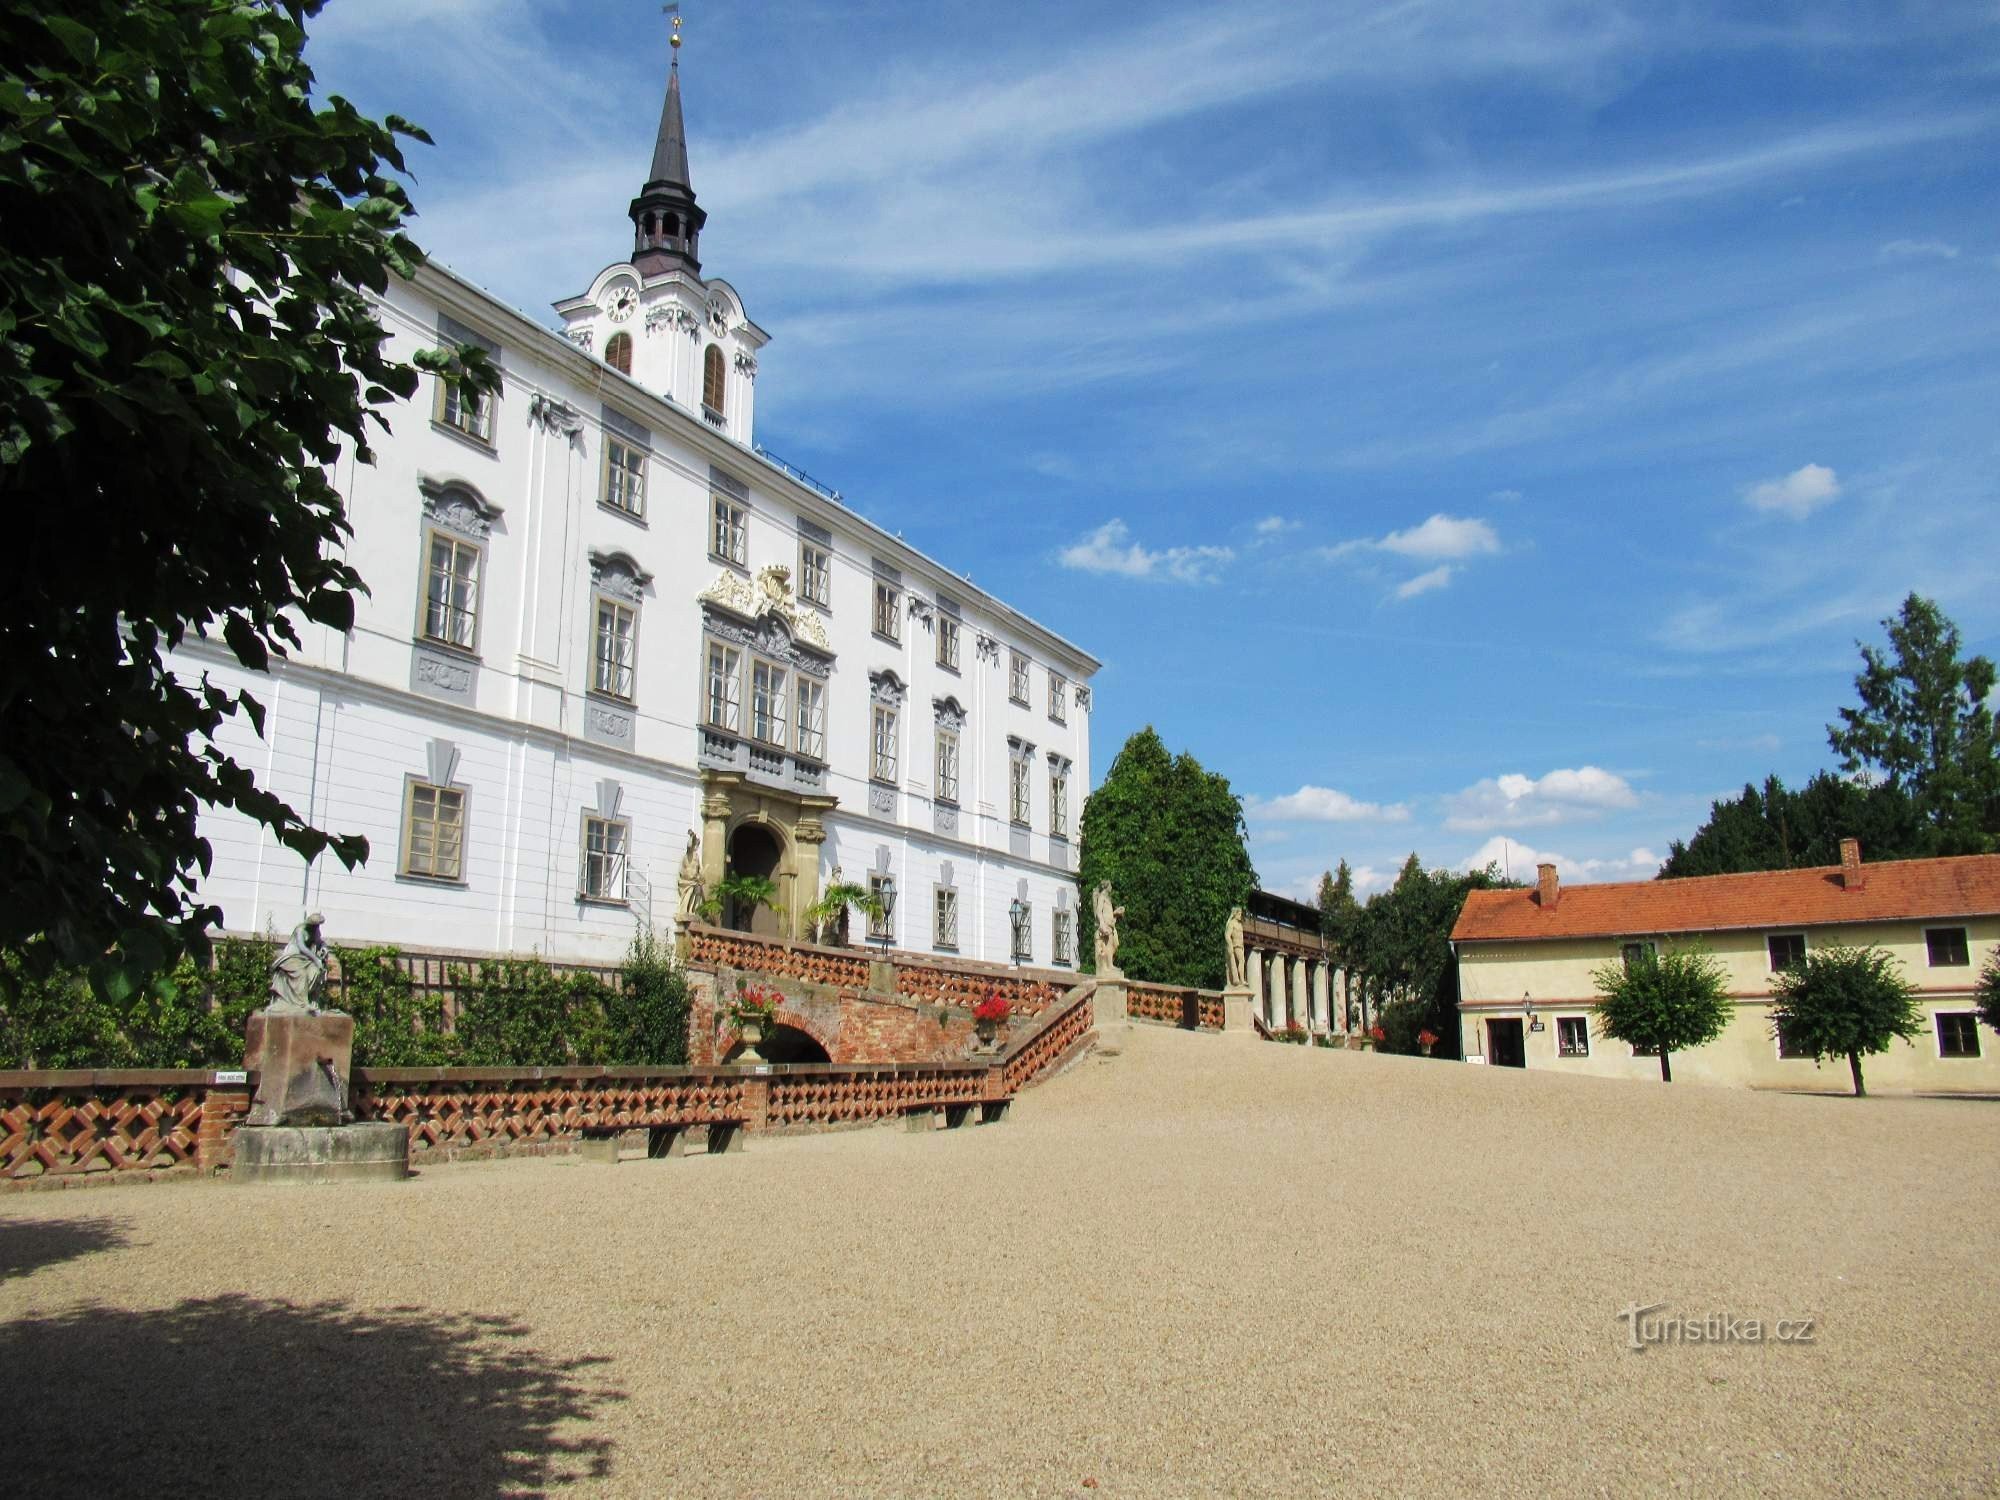 リシツェのバロック様式の城と城の庭園を散策